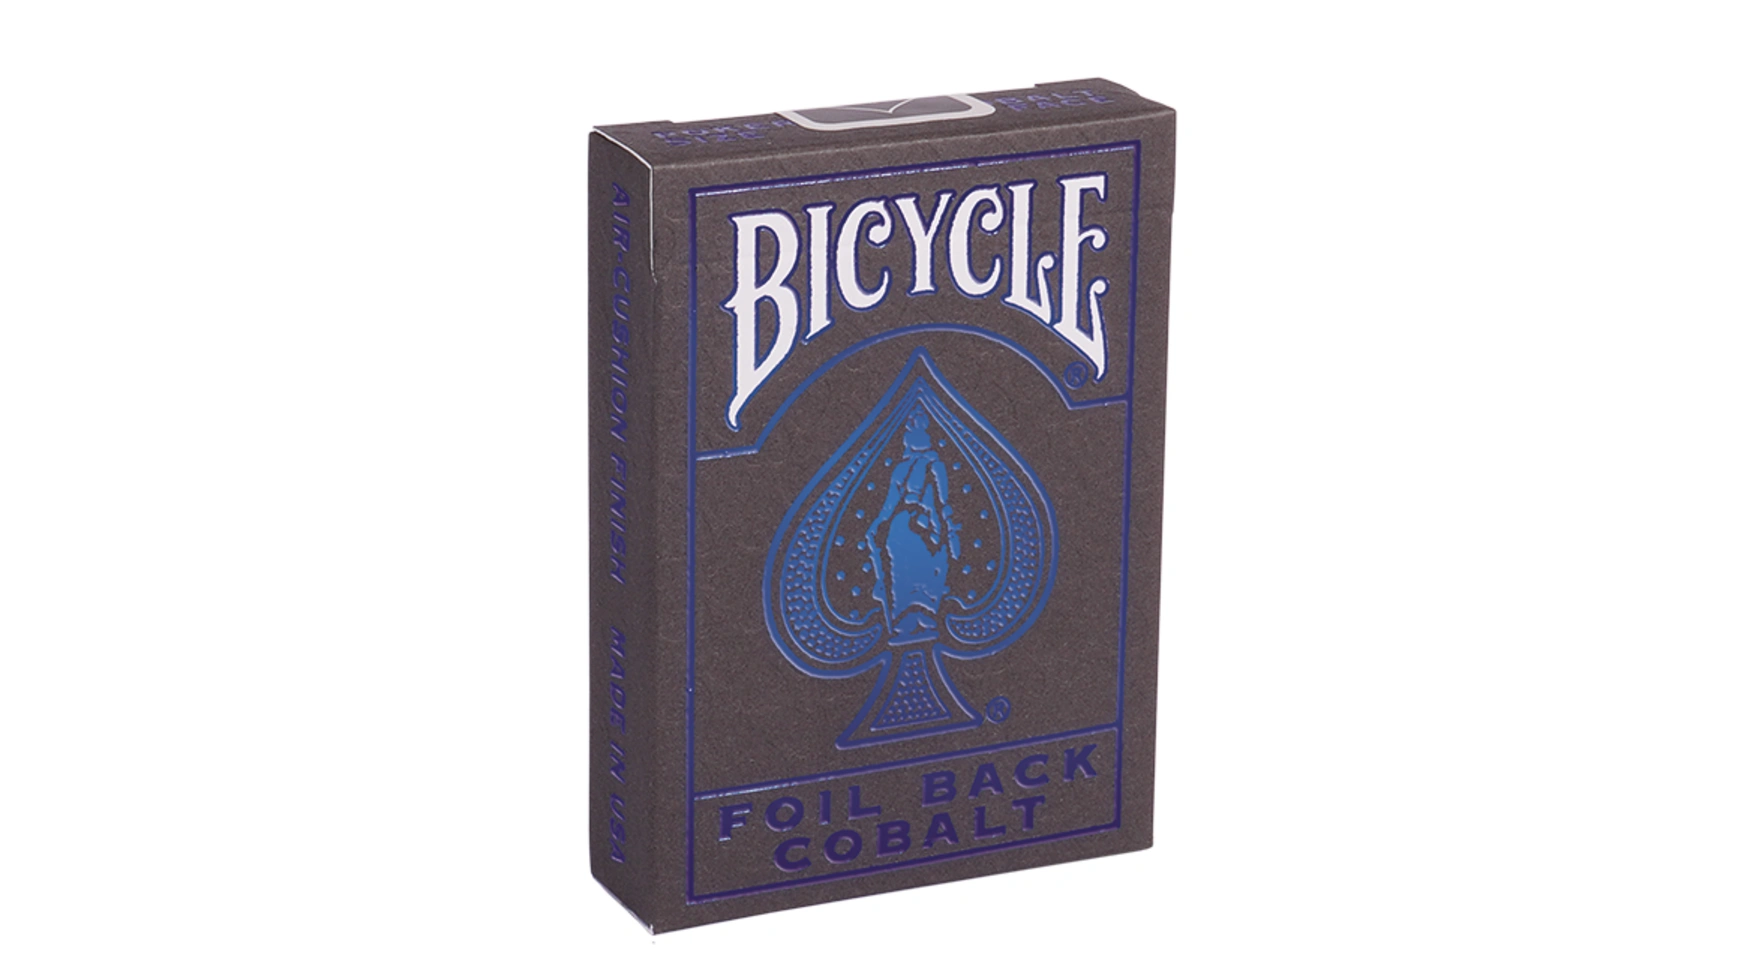 Bicycle игральные карты Metalluxe Blue uspcc игральные карты bicycle pro poker peek uspcc сша 54 карты